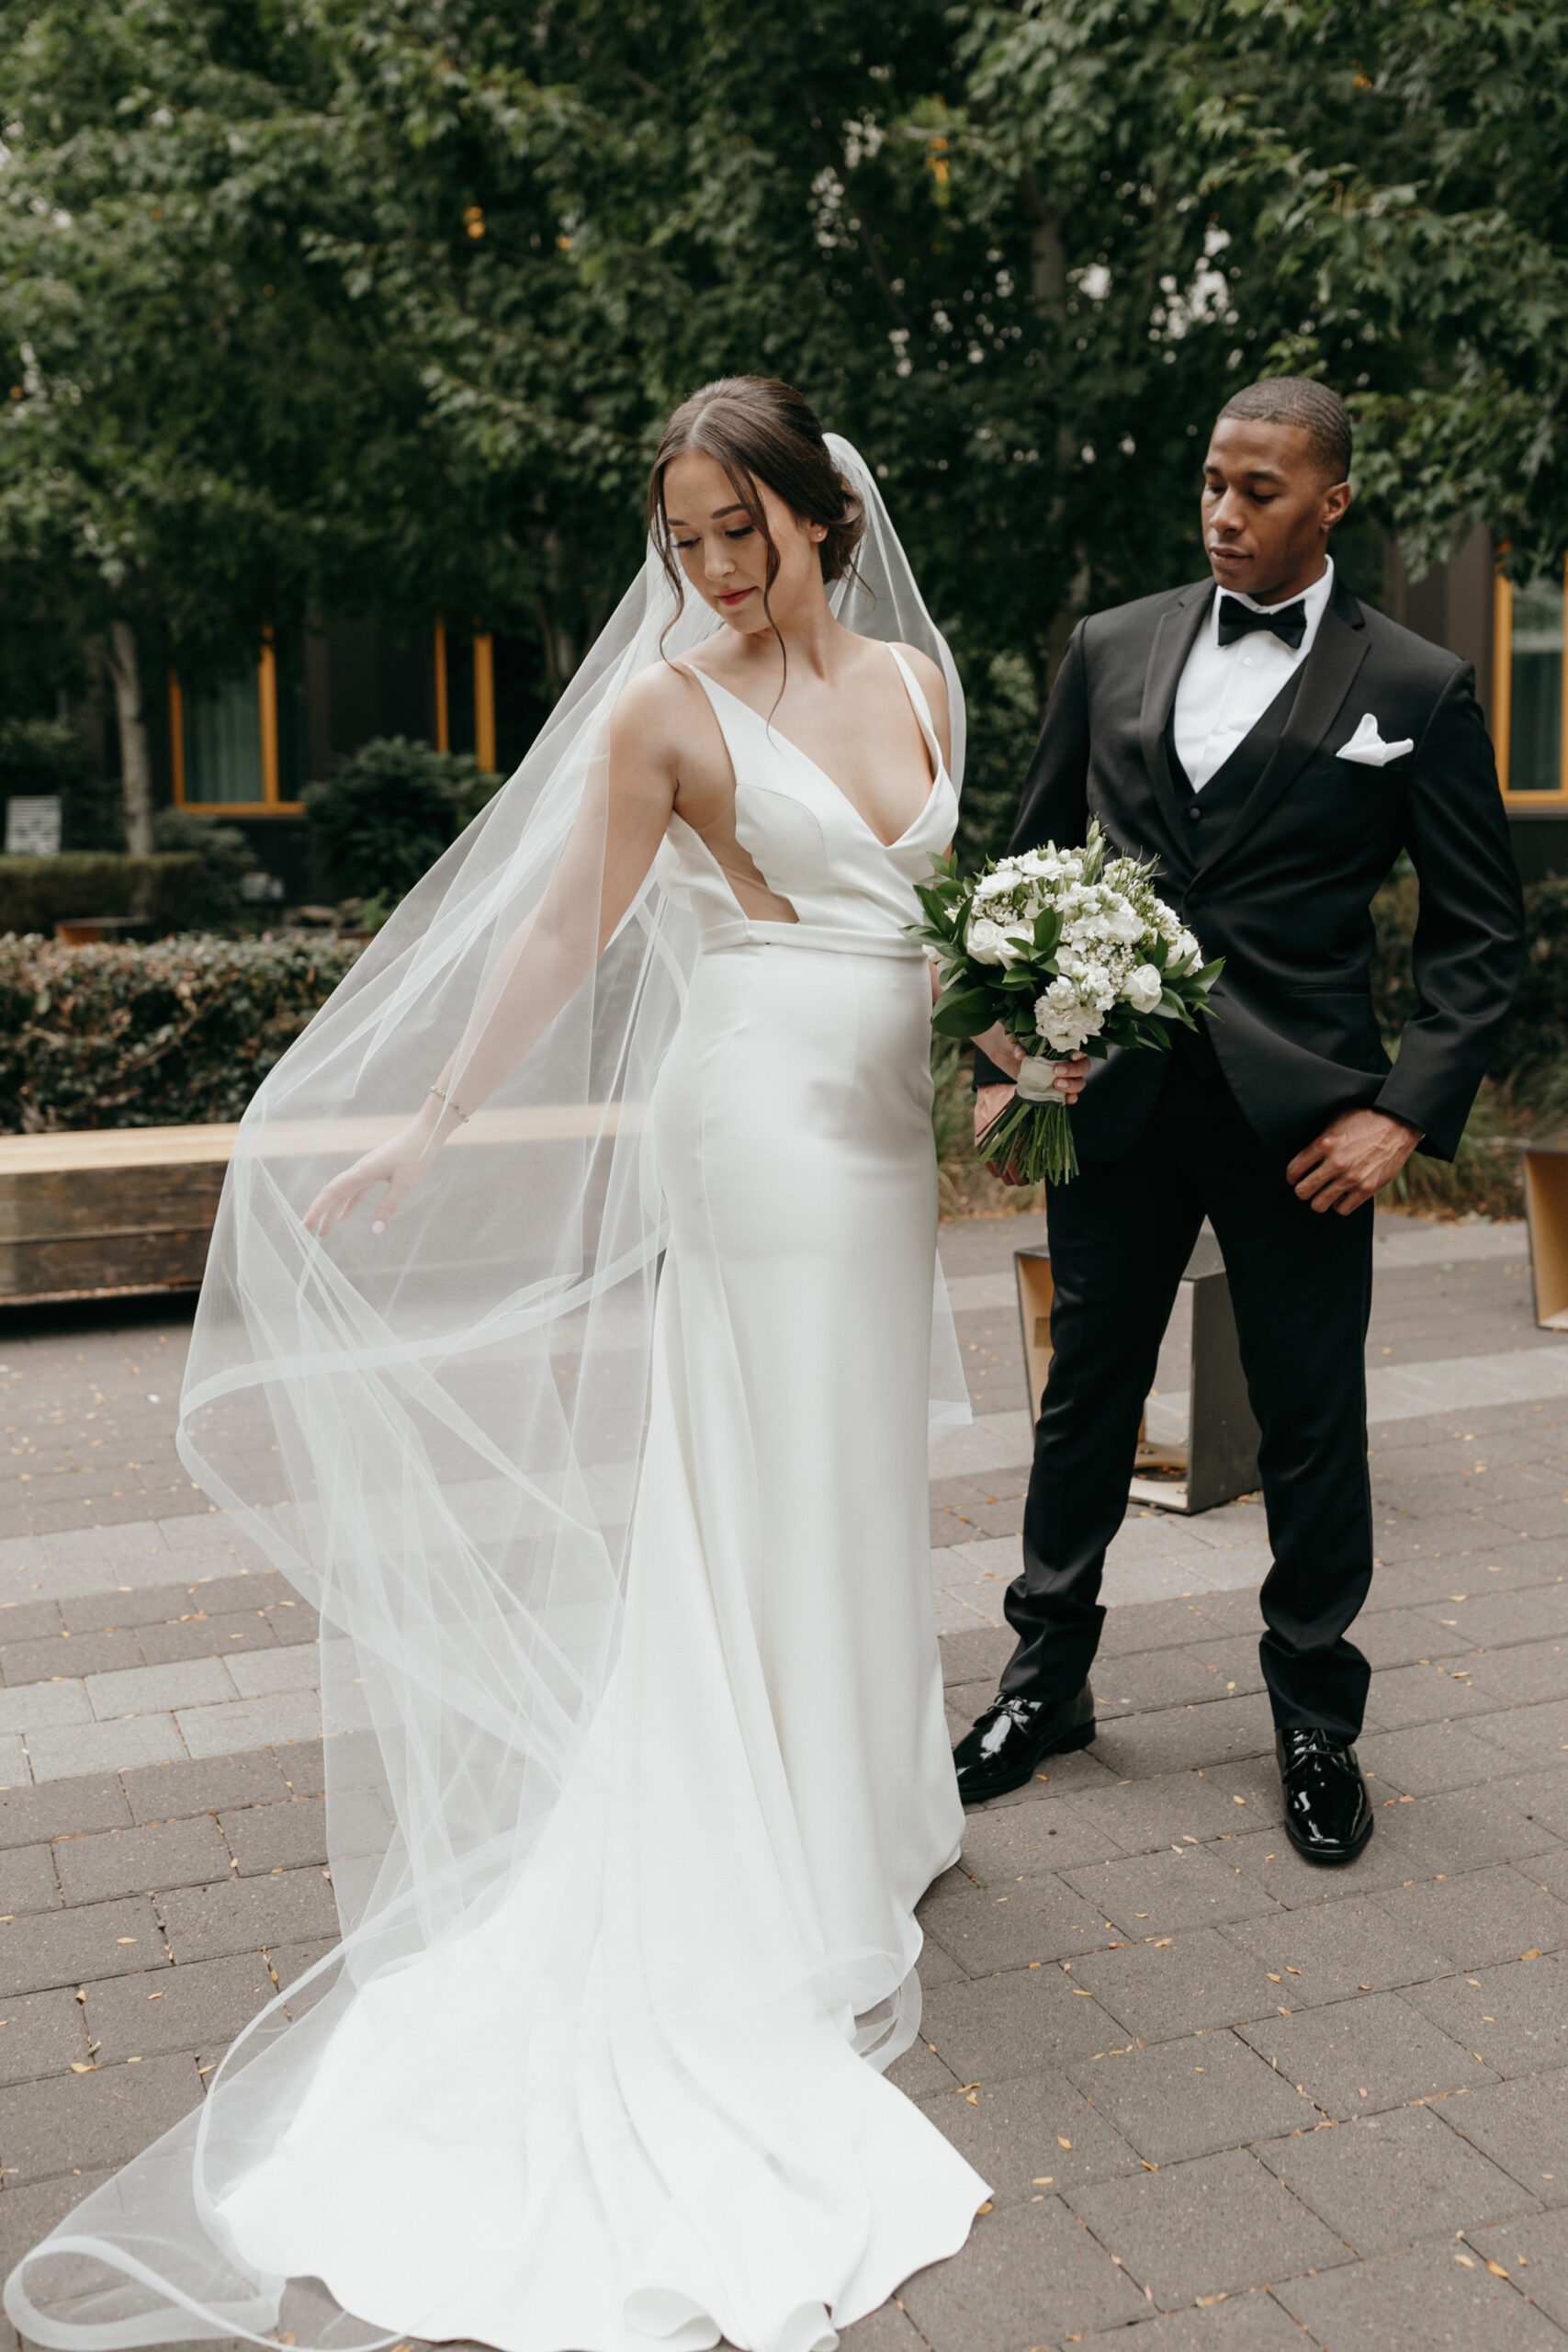 WEDDINGS - ALLISON HARP : Bend, Oregon Wedding Photographer